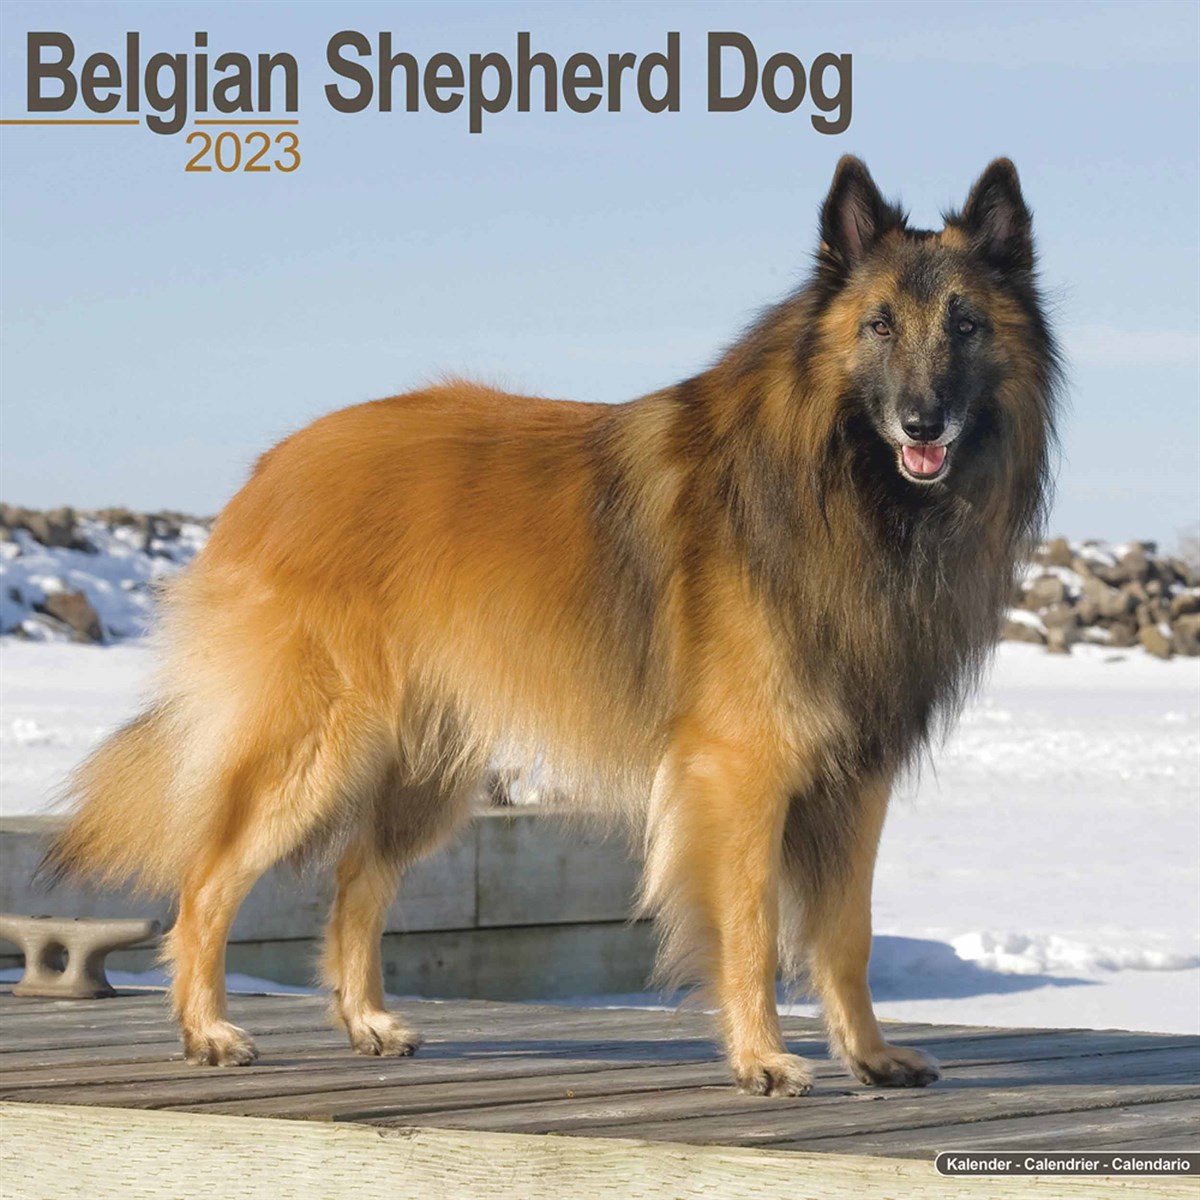 Belgian Shepherd Dog 2023 Calendars